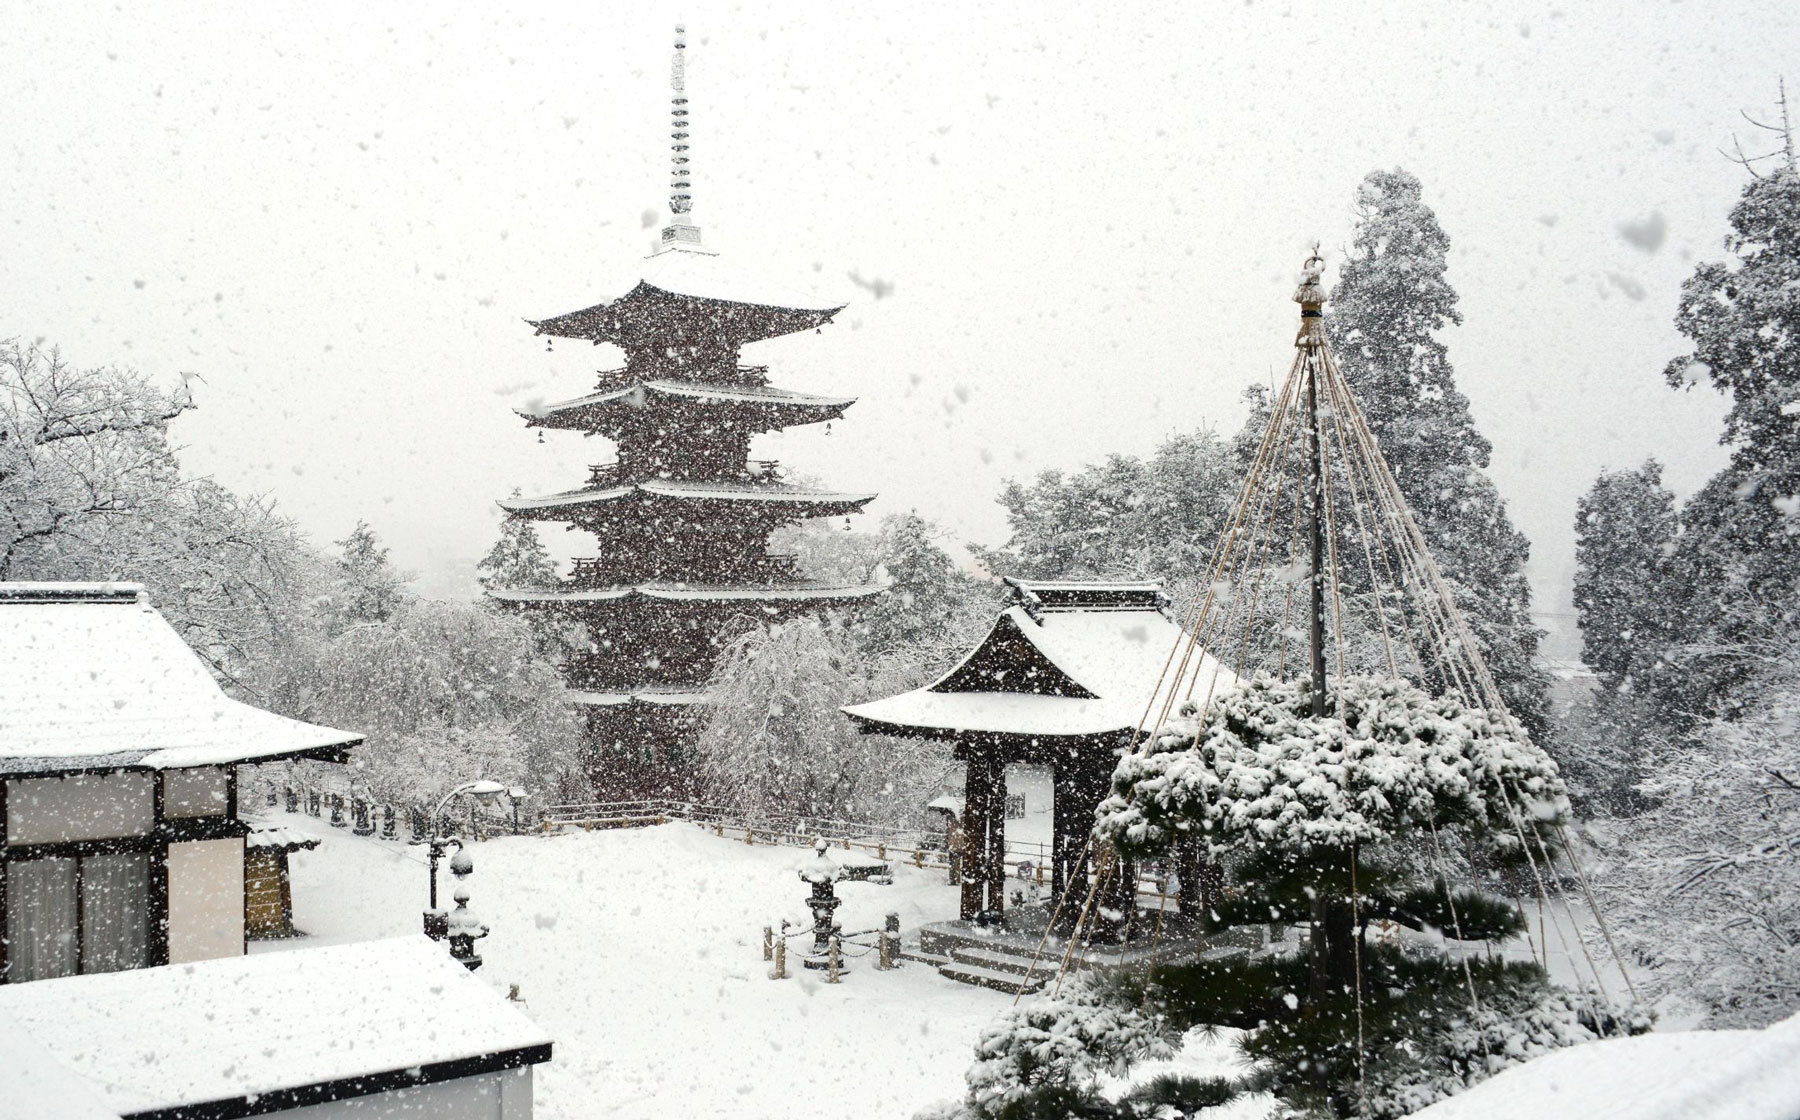 Saishoin Temple in the snow